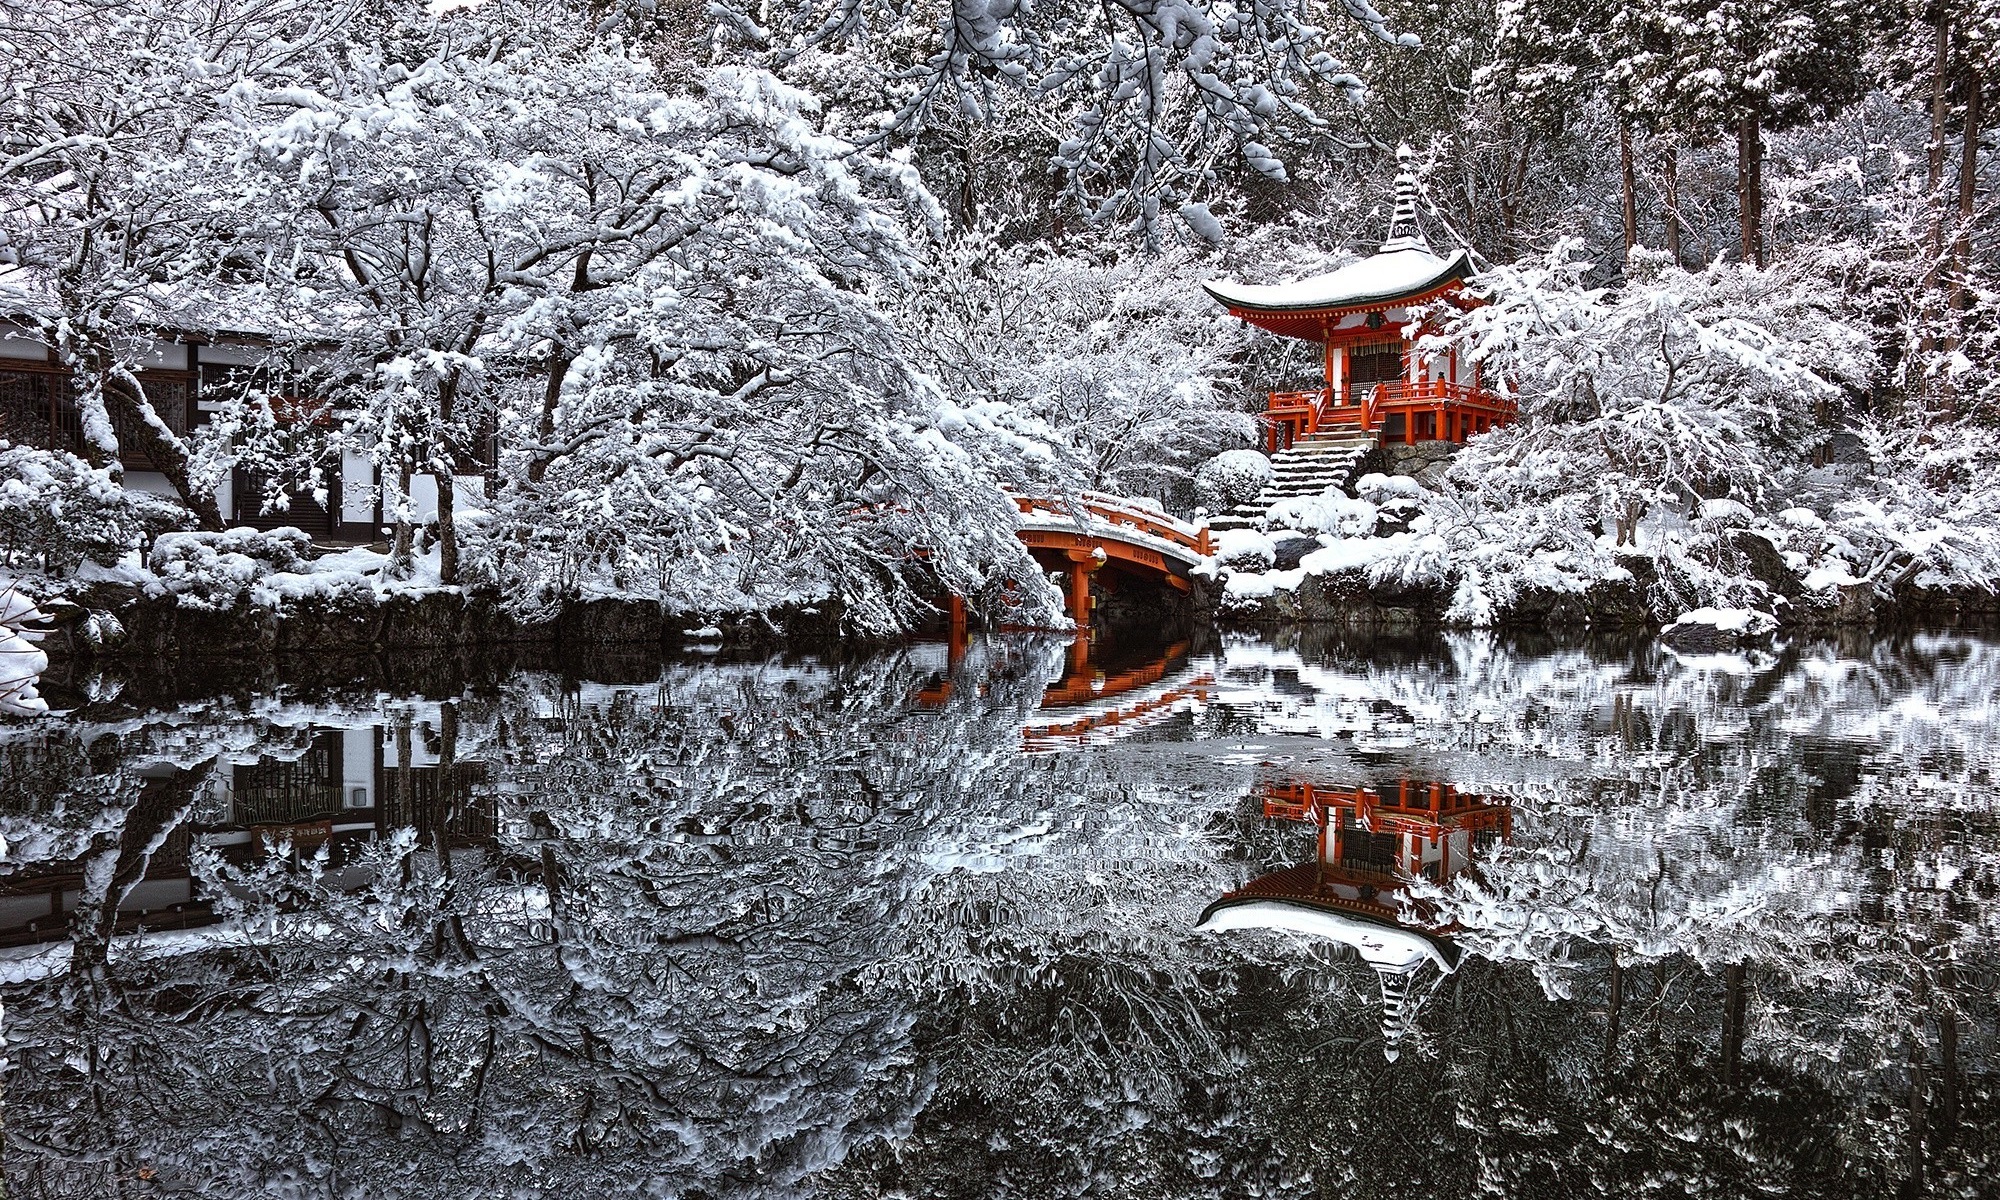 Japanese shrine in winter forest.